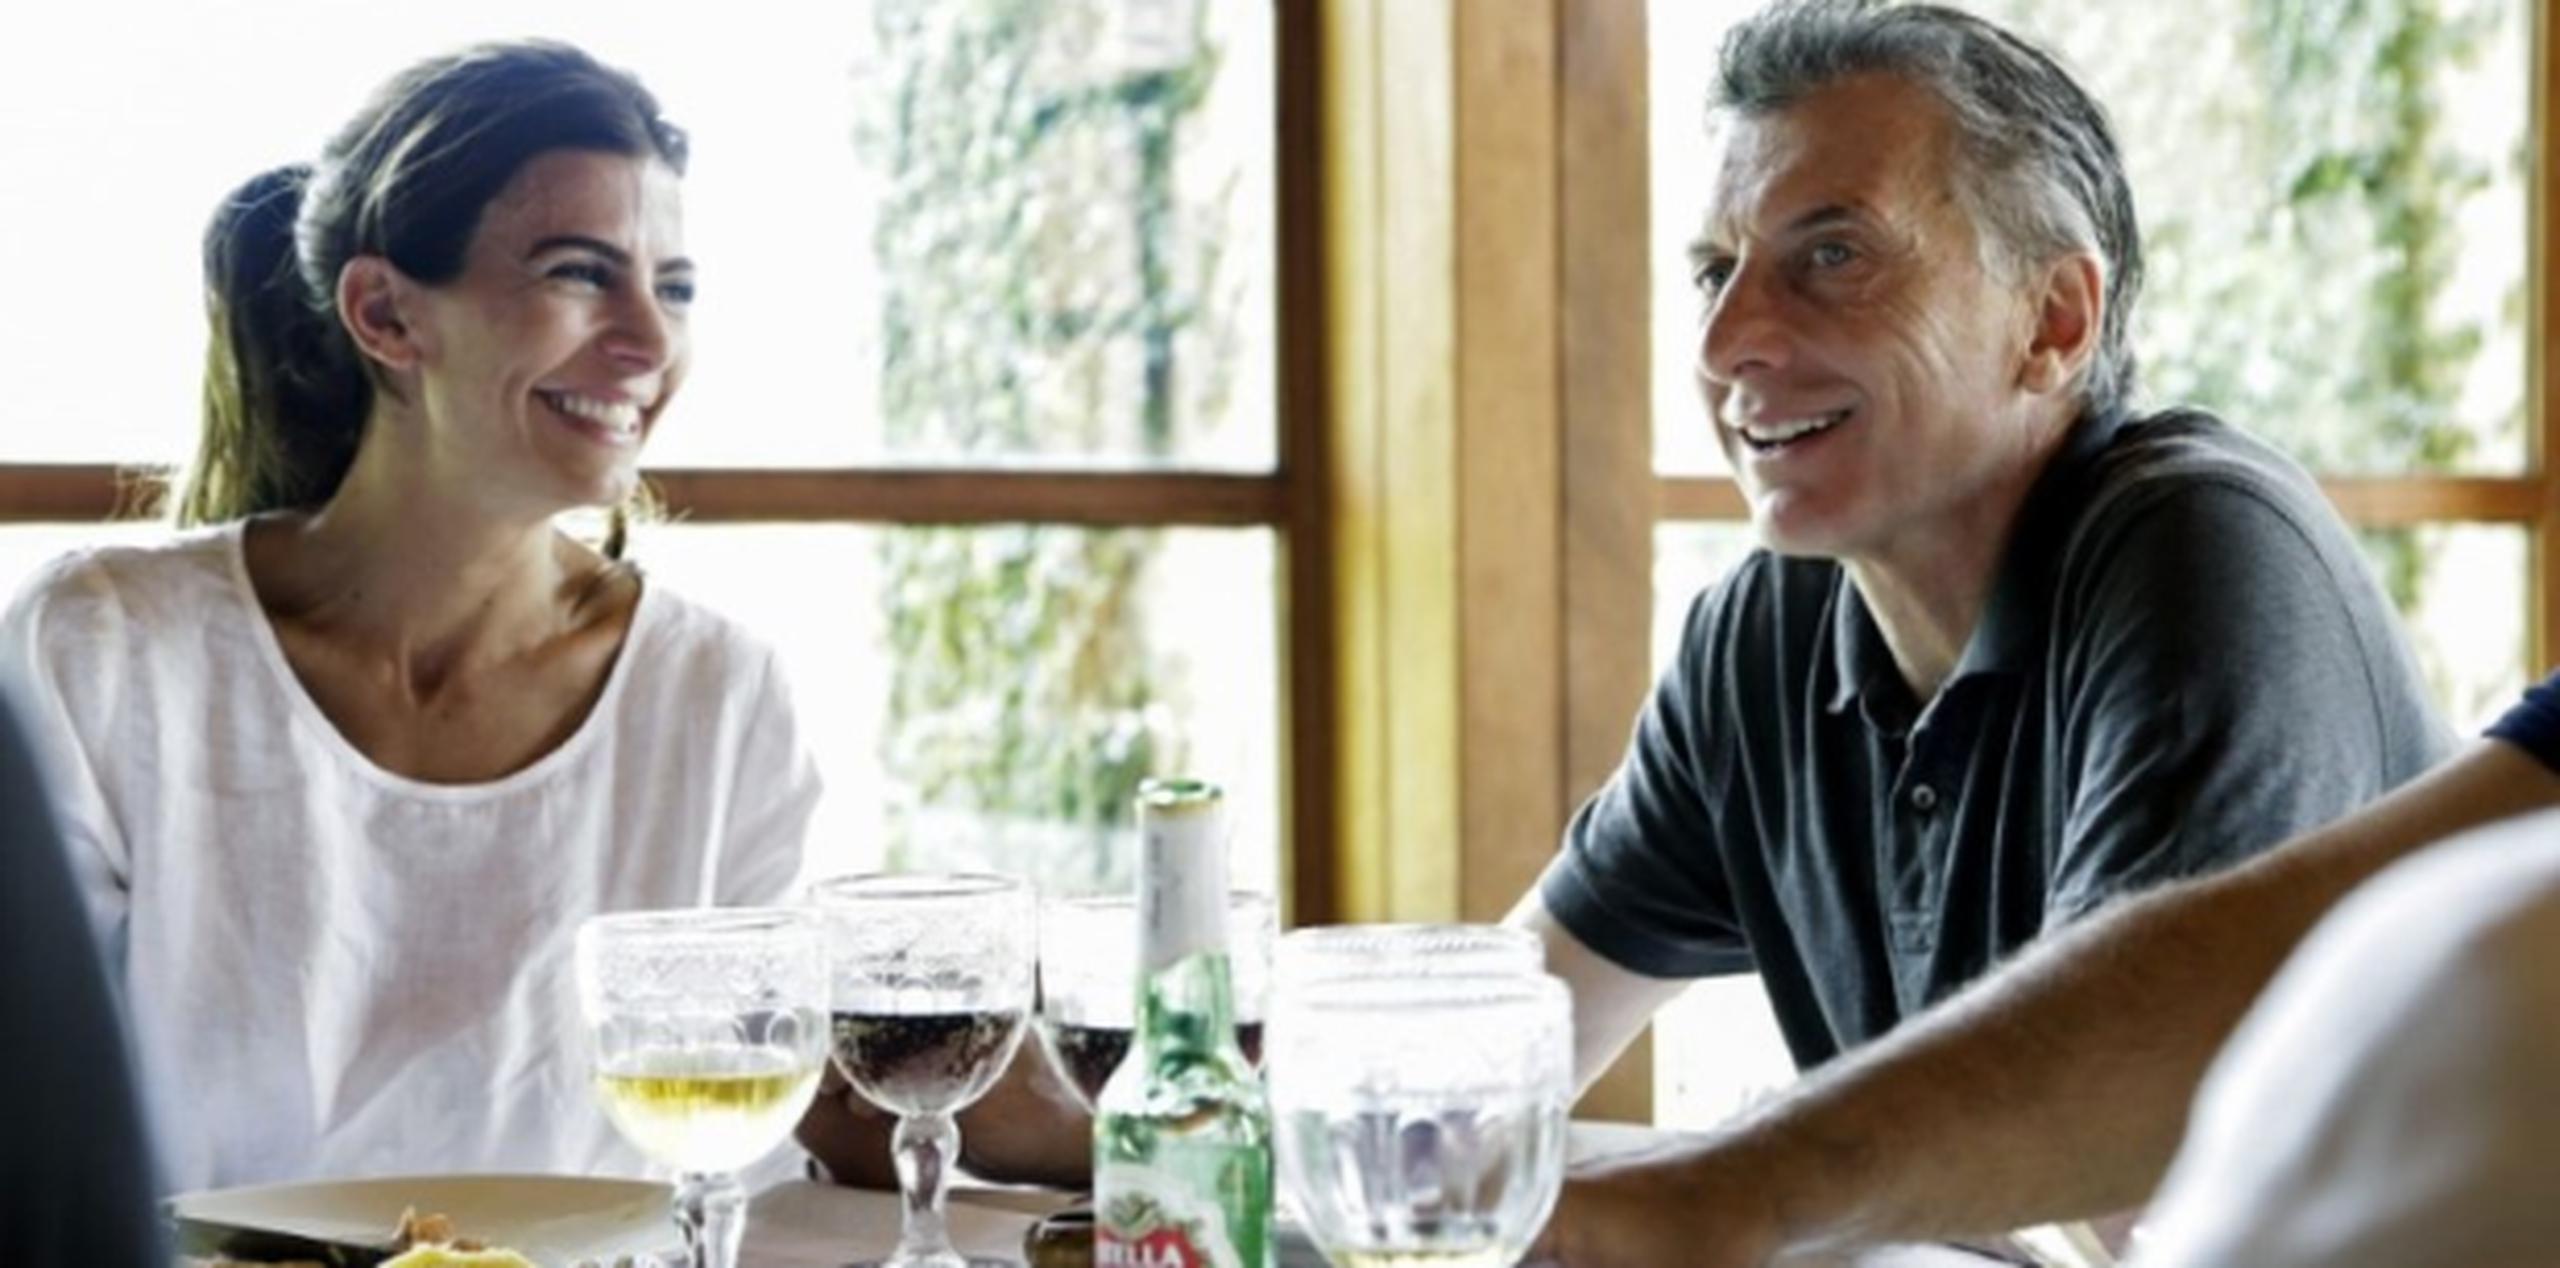 Macri y su esposa almuerzan con amistades tras emitir su voto. (AFP)